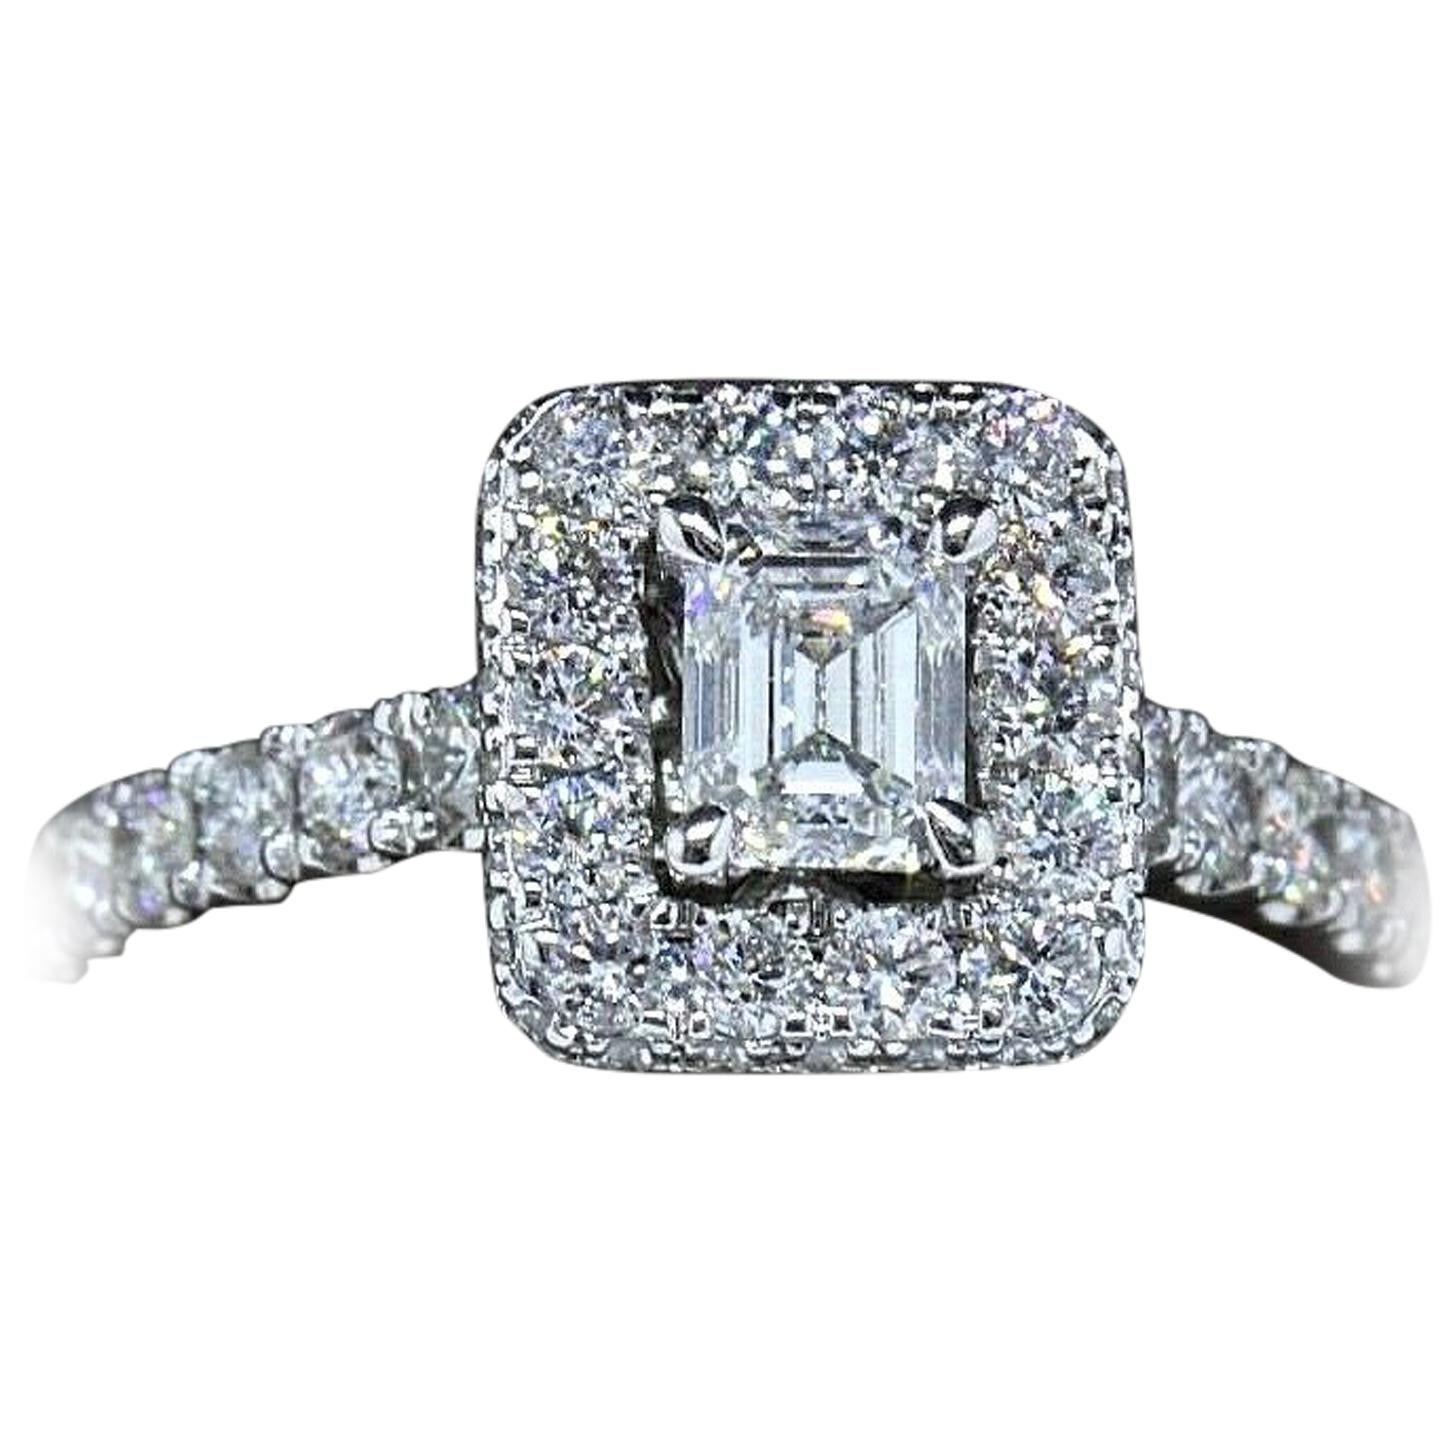 Neil Lane Diamond Engagement Ring Emerald Cut 1 1/2 Carat SI1 14 Karat Gold